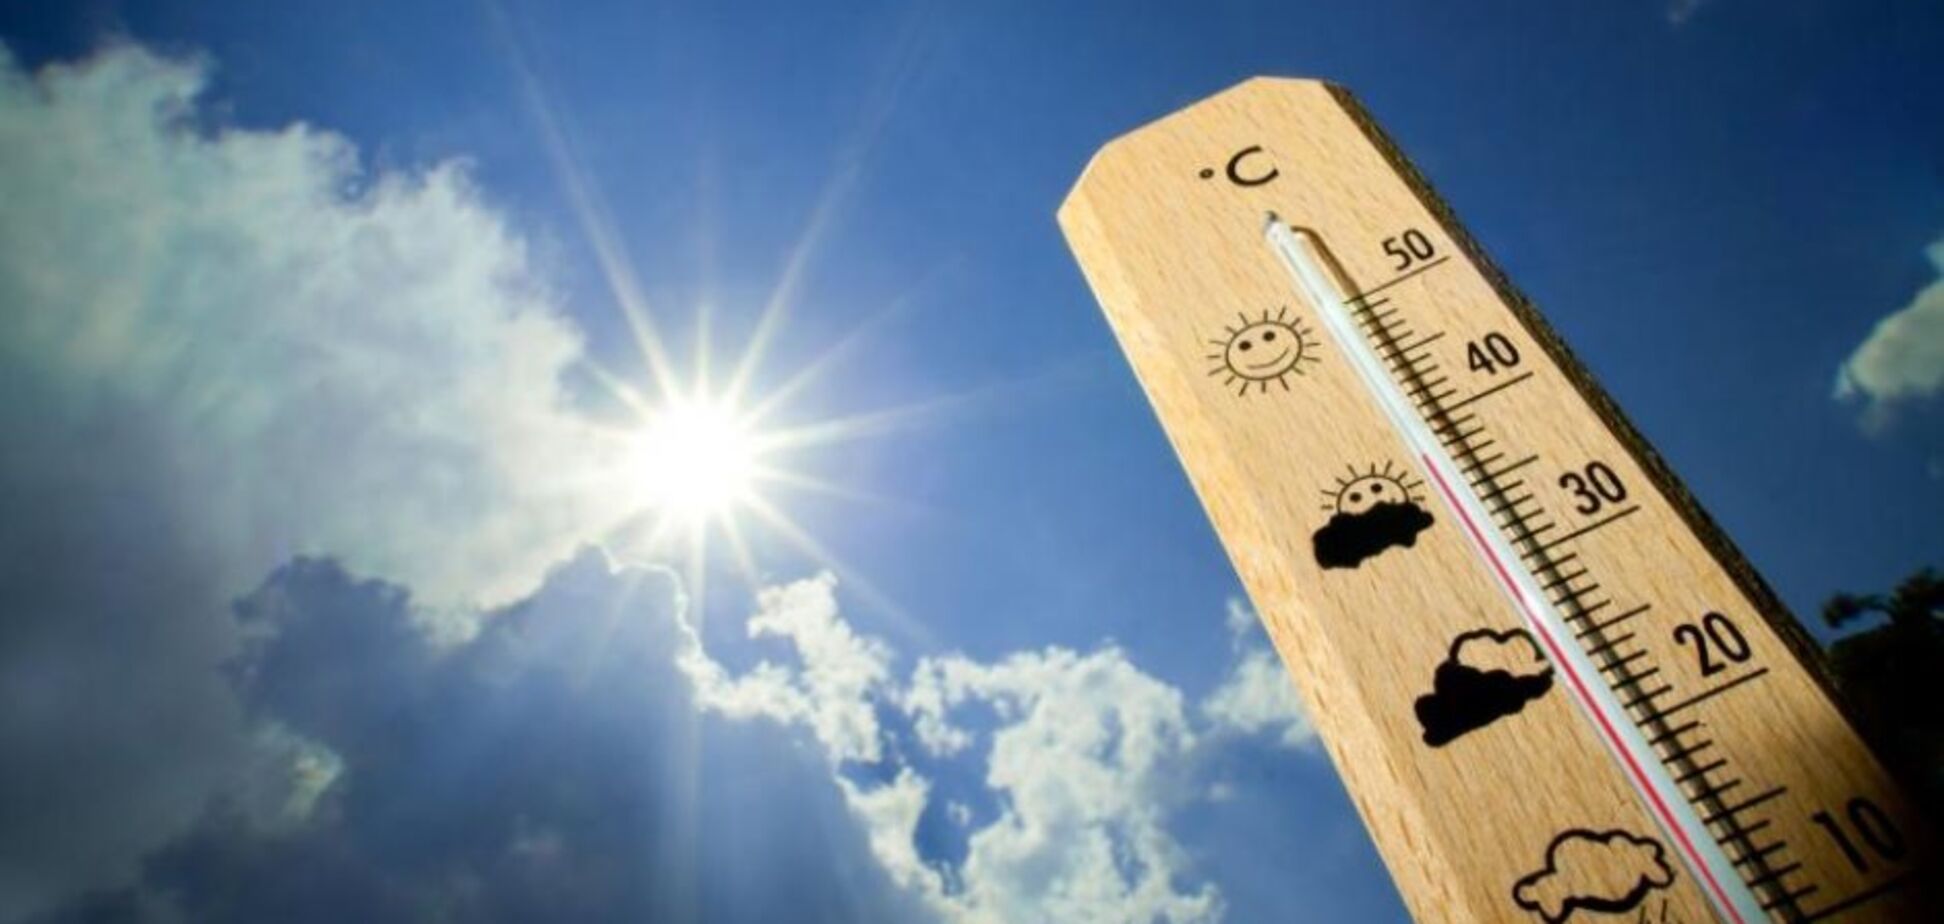 Йде похолодання: синоптики уточнили прогноз погоди в Україні